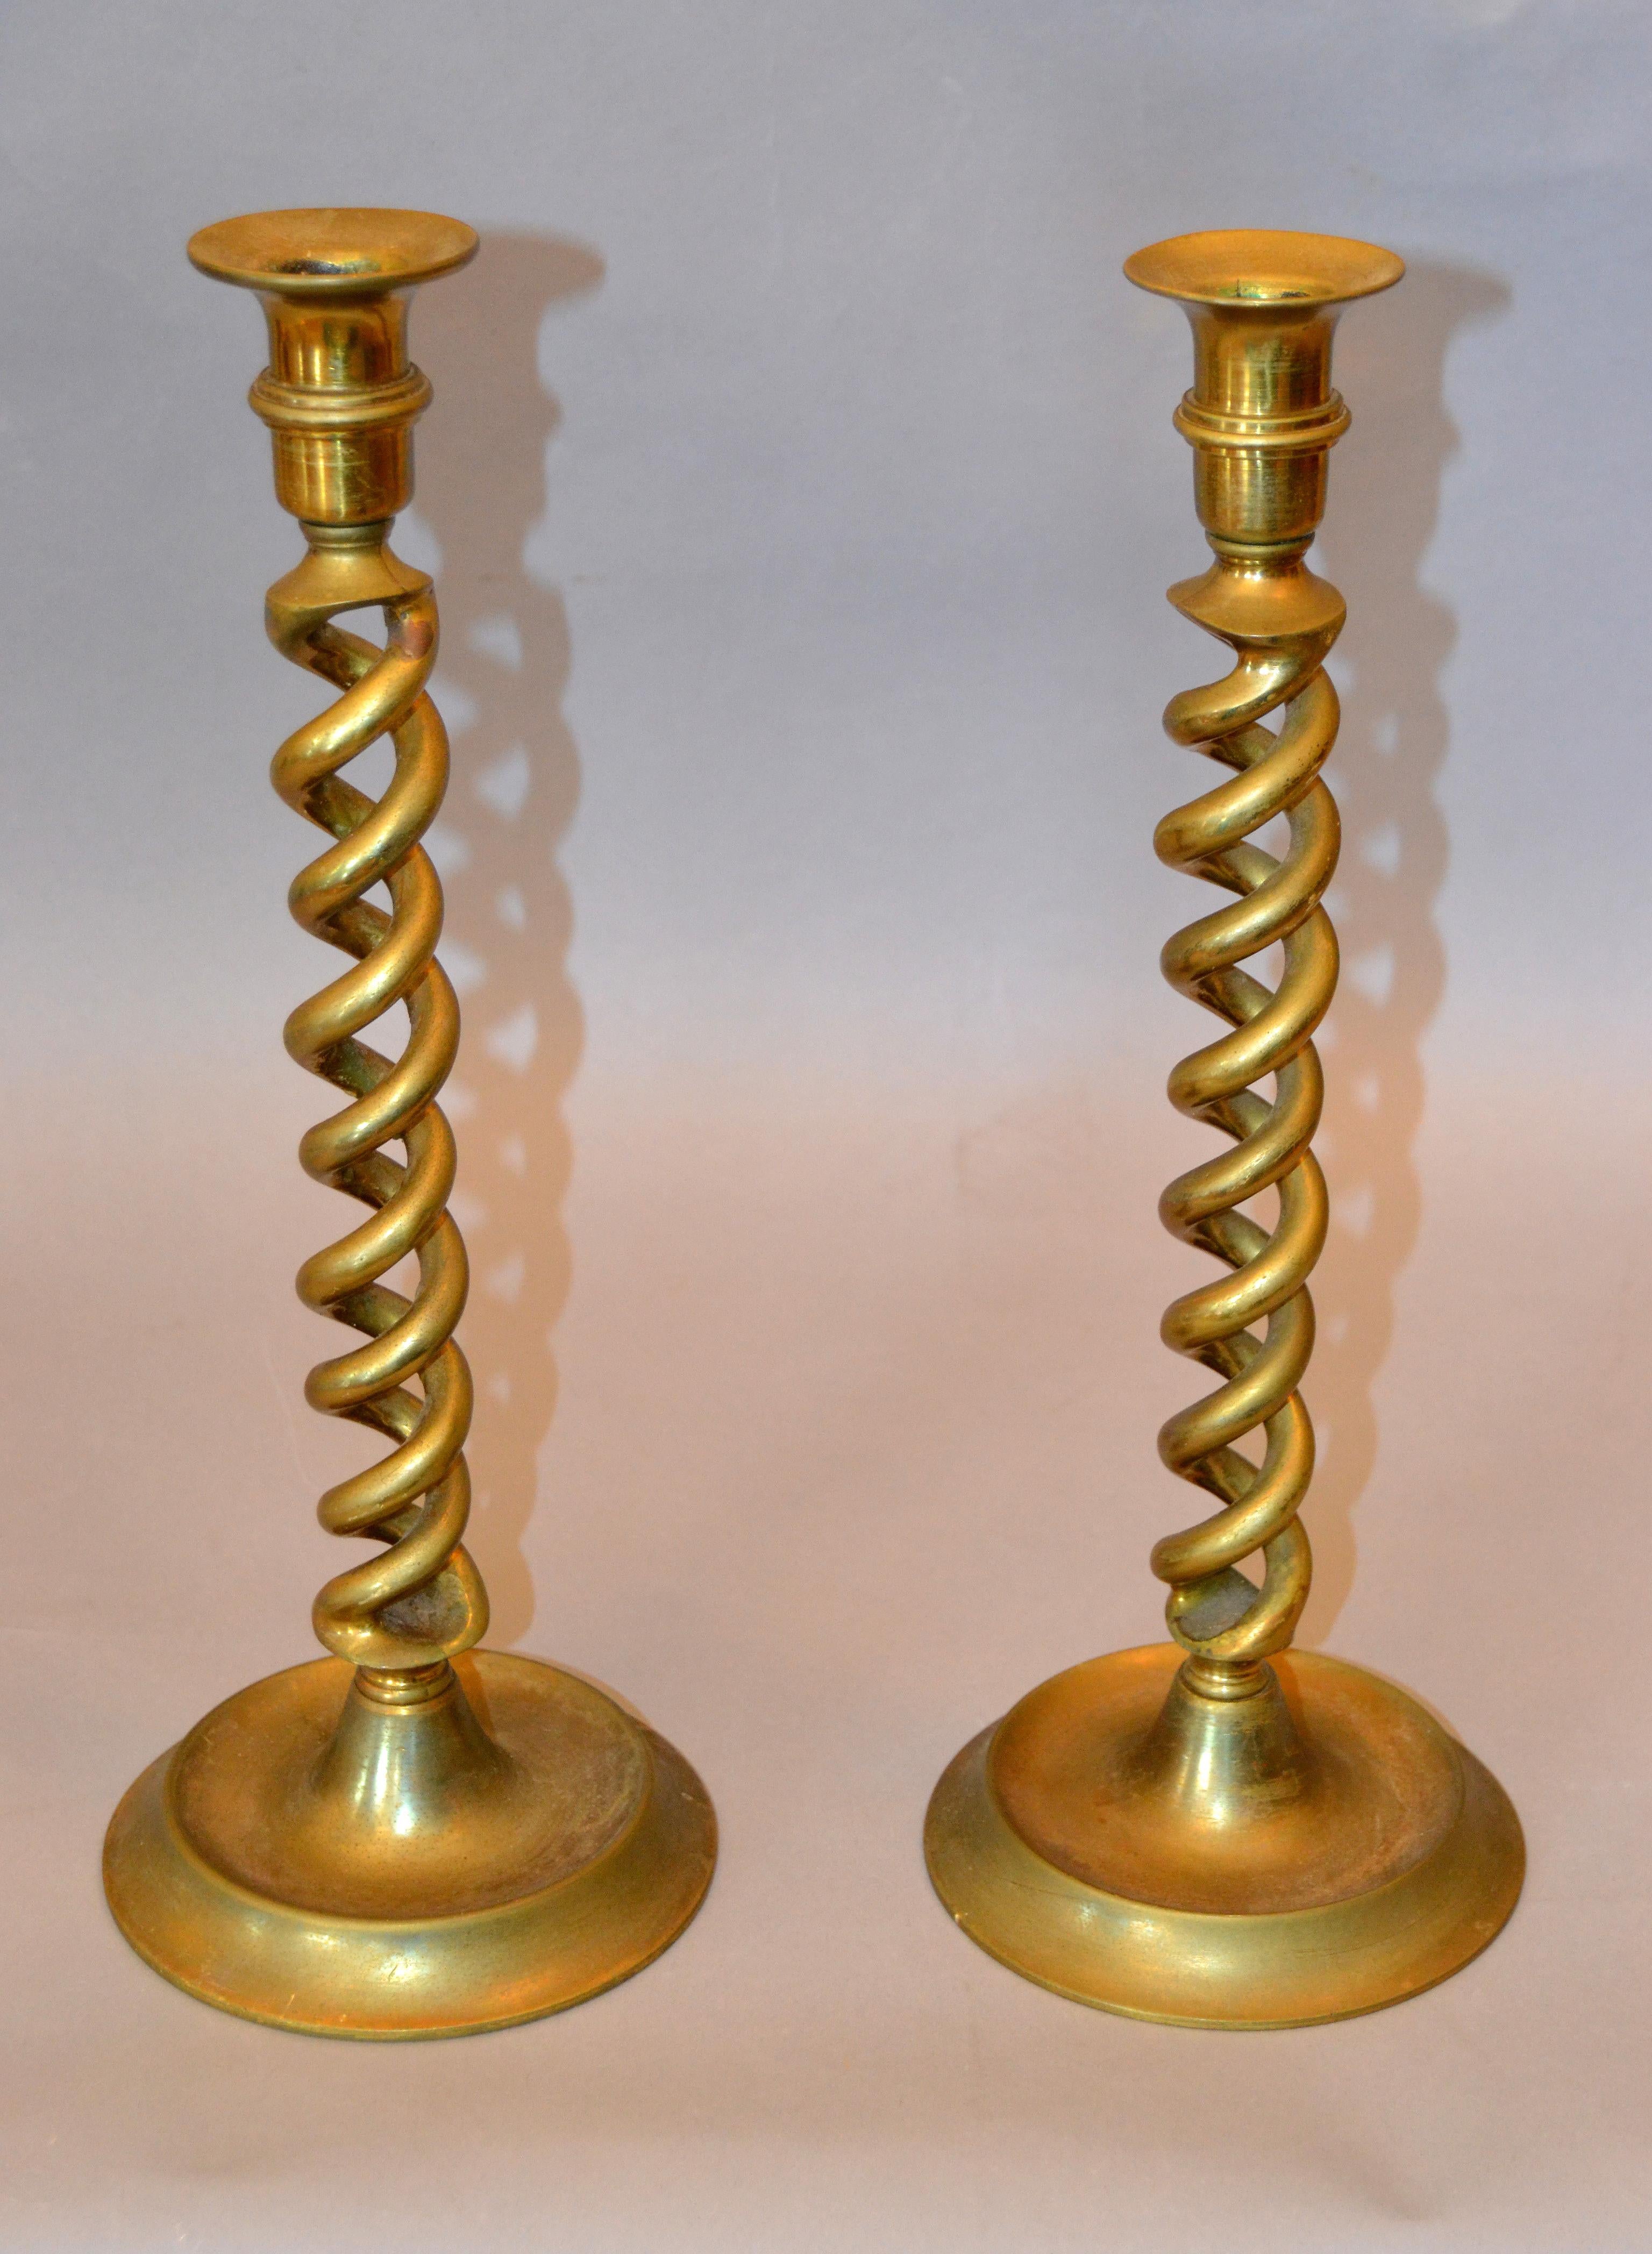 20th Century British Mid-Century Modern Spiral Bronze Candlesticks Made In England, Pair